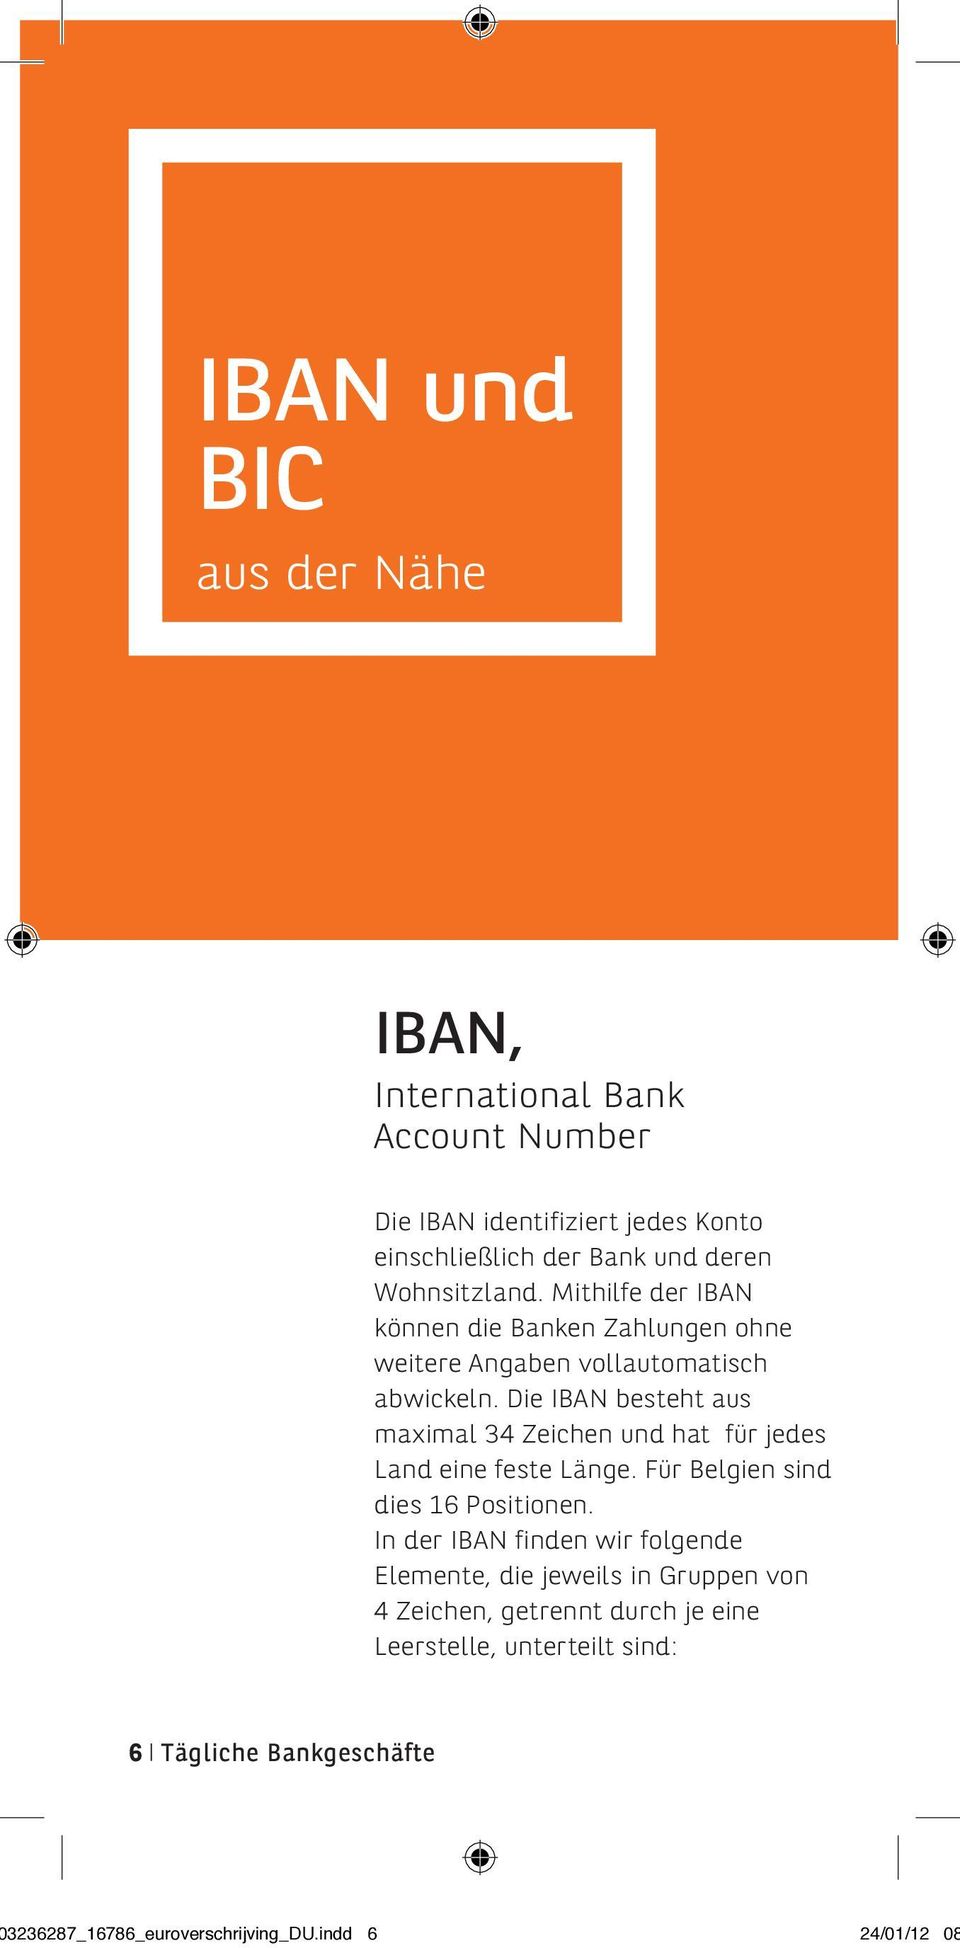 Die IBAN besteht aus maximal 34 Zeichen und hat für jedes Land eine feste Länge. Für Belgien sind dies 16 Positionen.